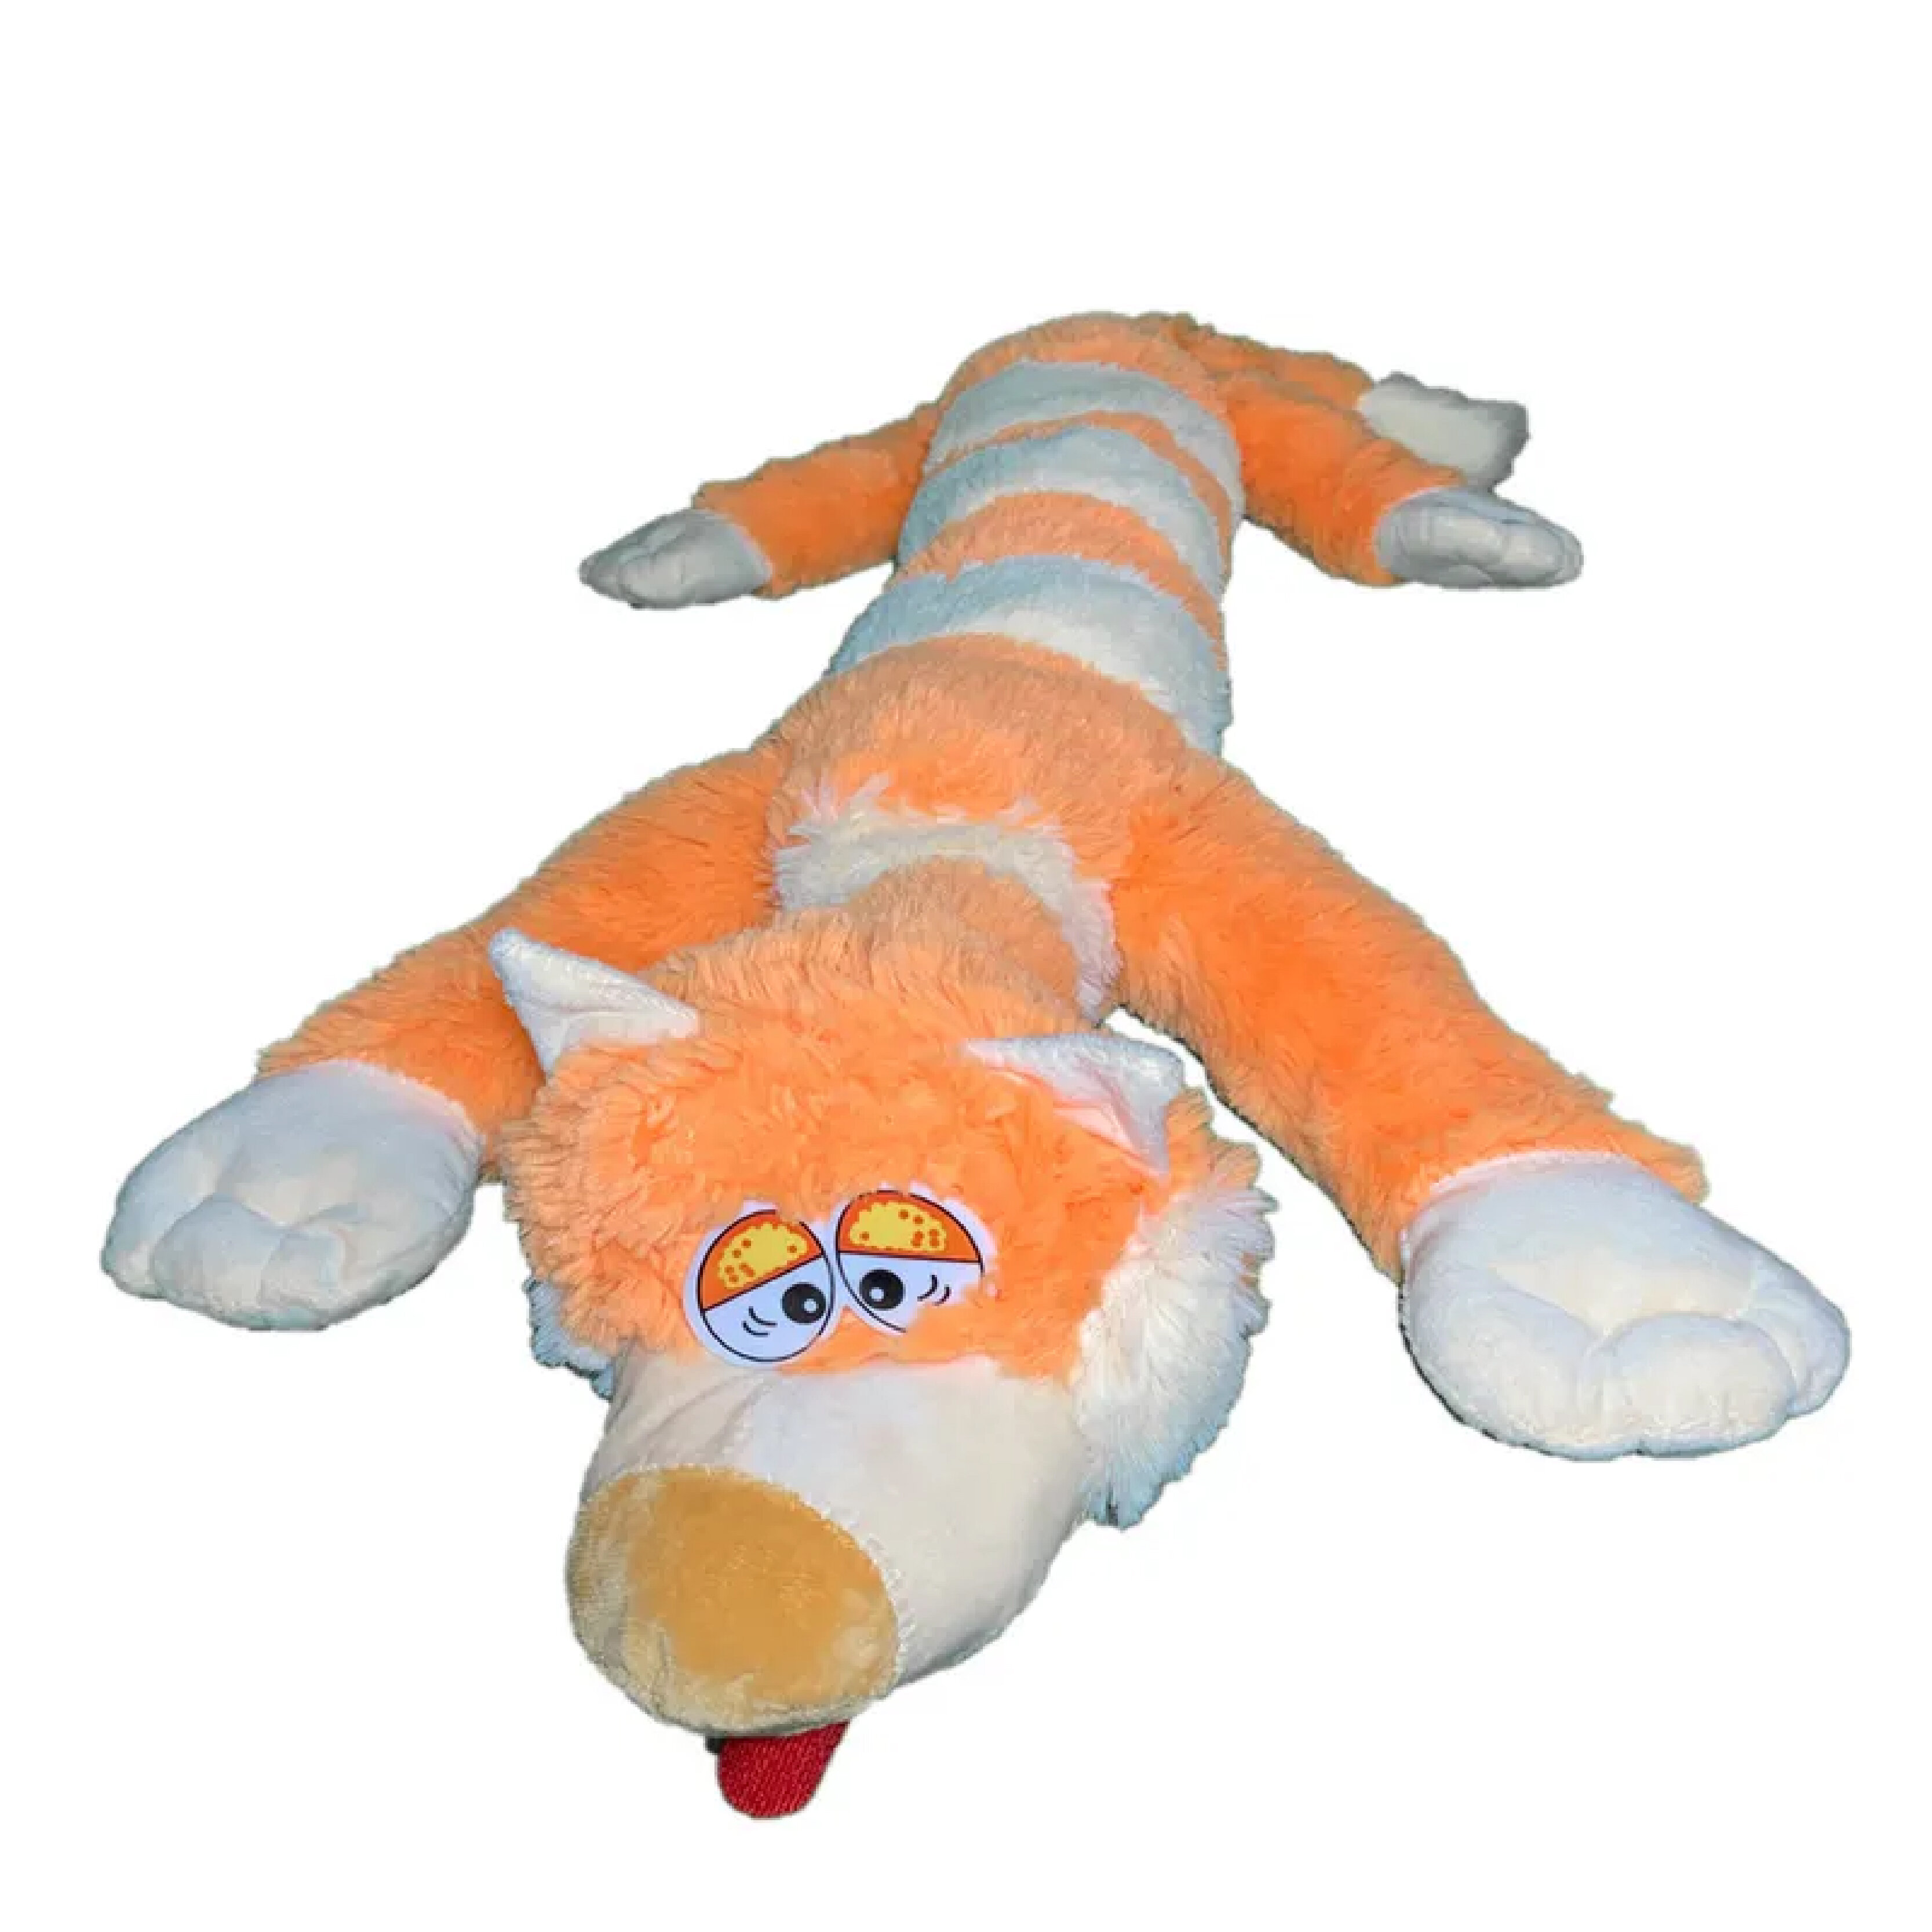 Мягкая игрушка La-LaLand Кот багет, оранжевый, 90 см мягкая игрушка toy and joy кот багет 100см оранжевый bel 03356 orange